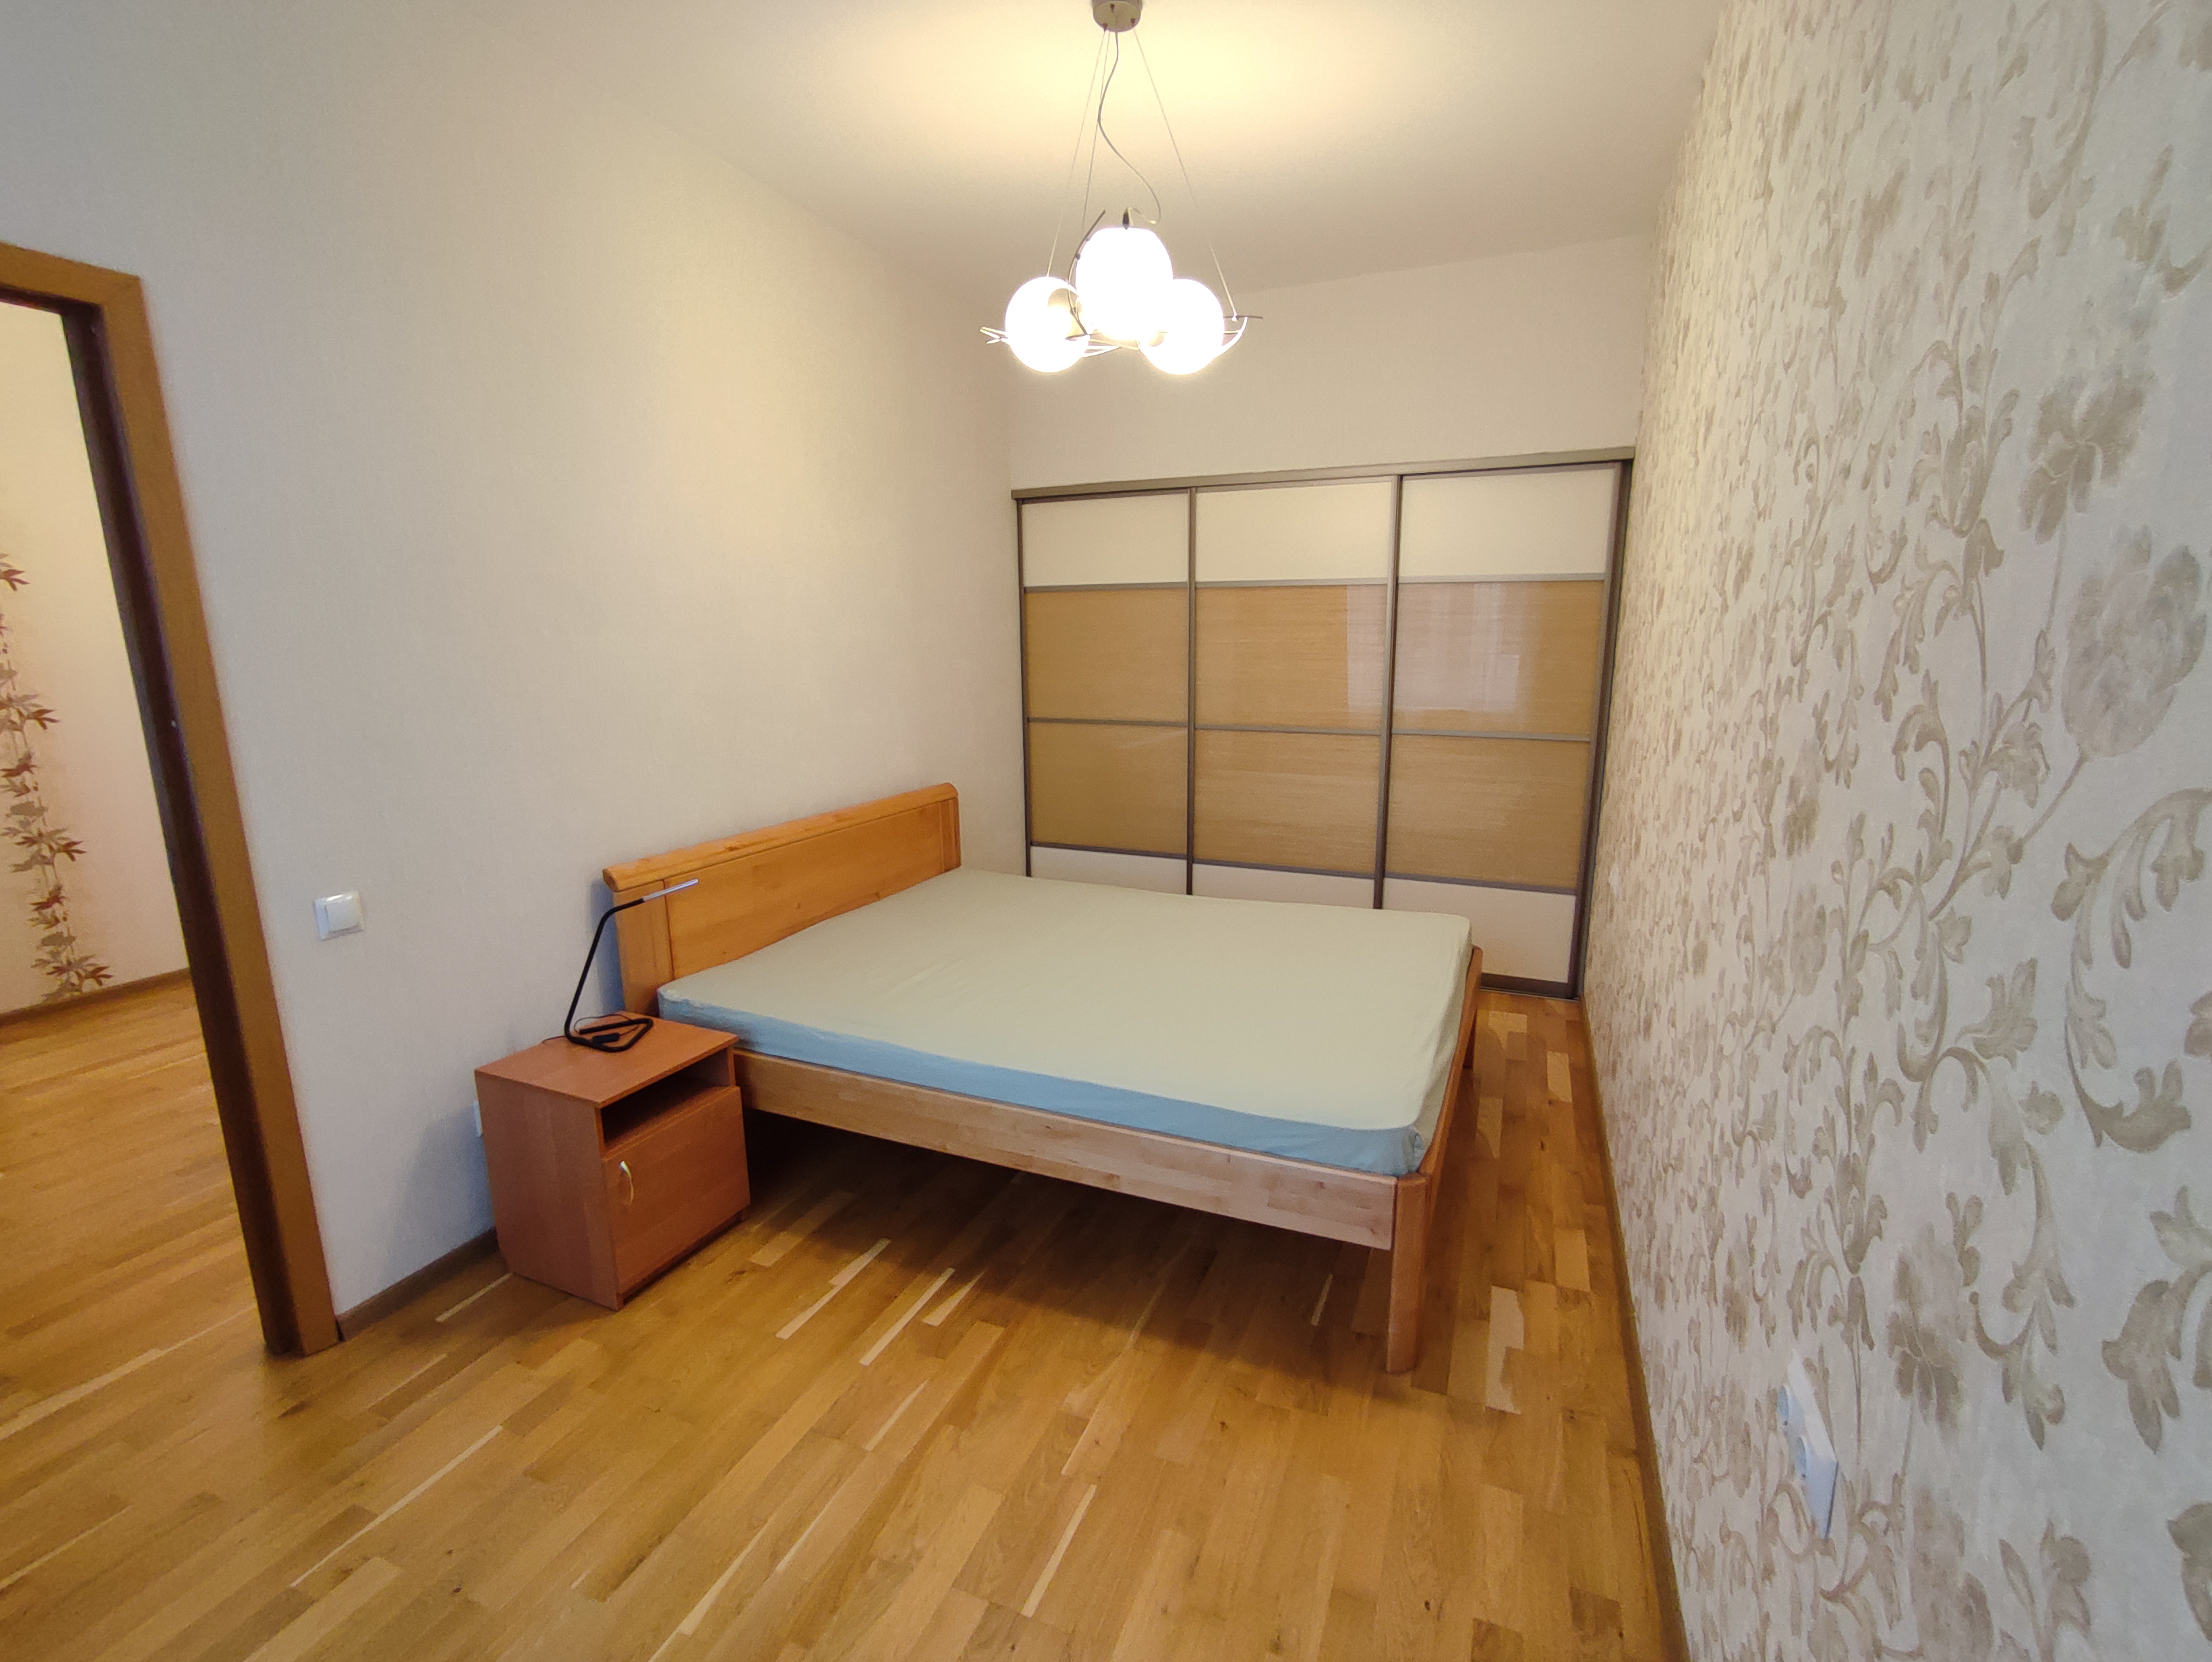 Apartment for rent, Dzirnavu street 113a - Image 1